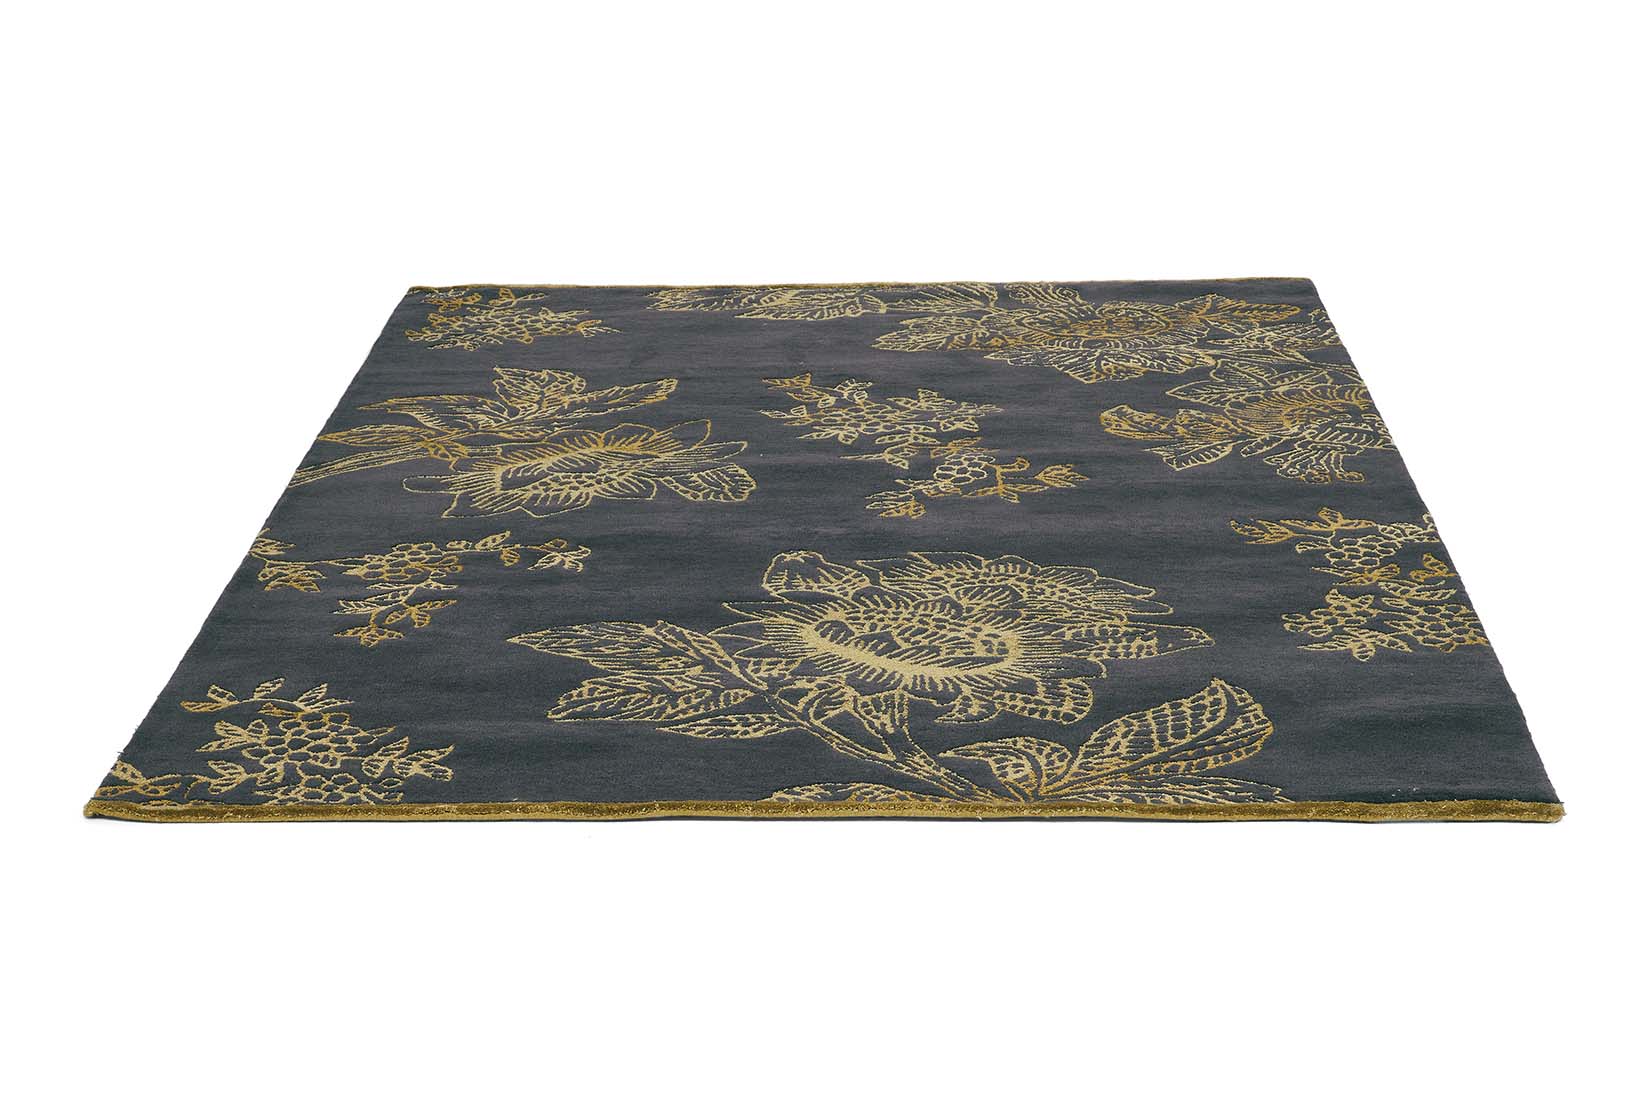 Rectangular black rug with gold floral design